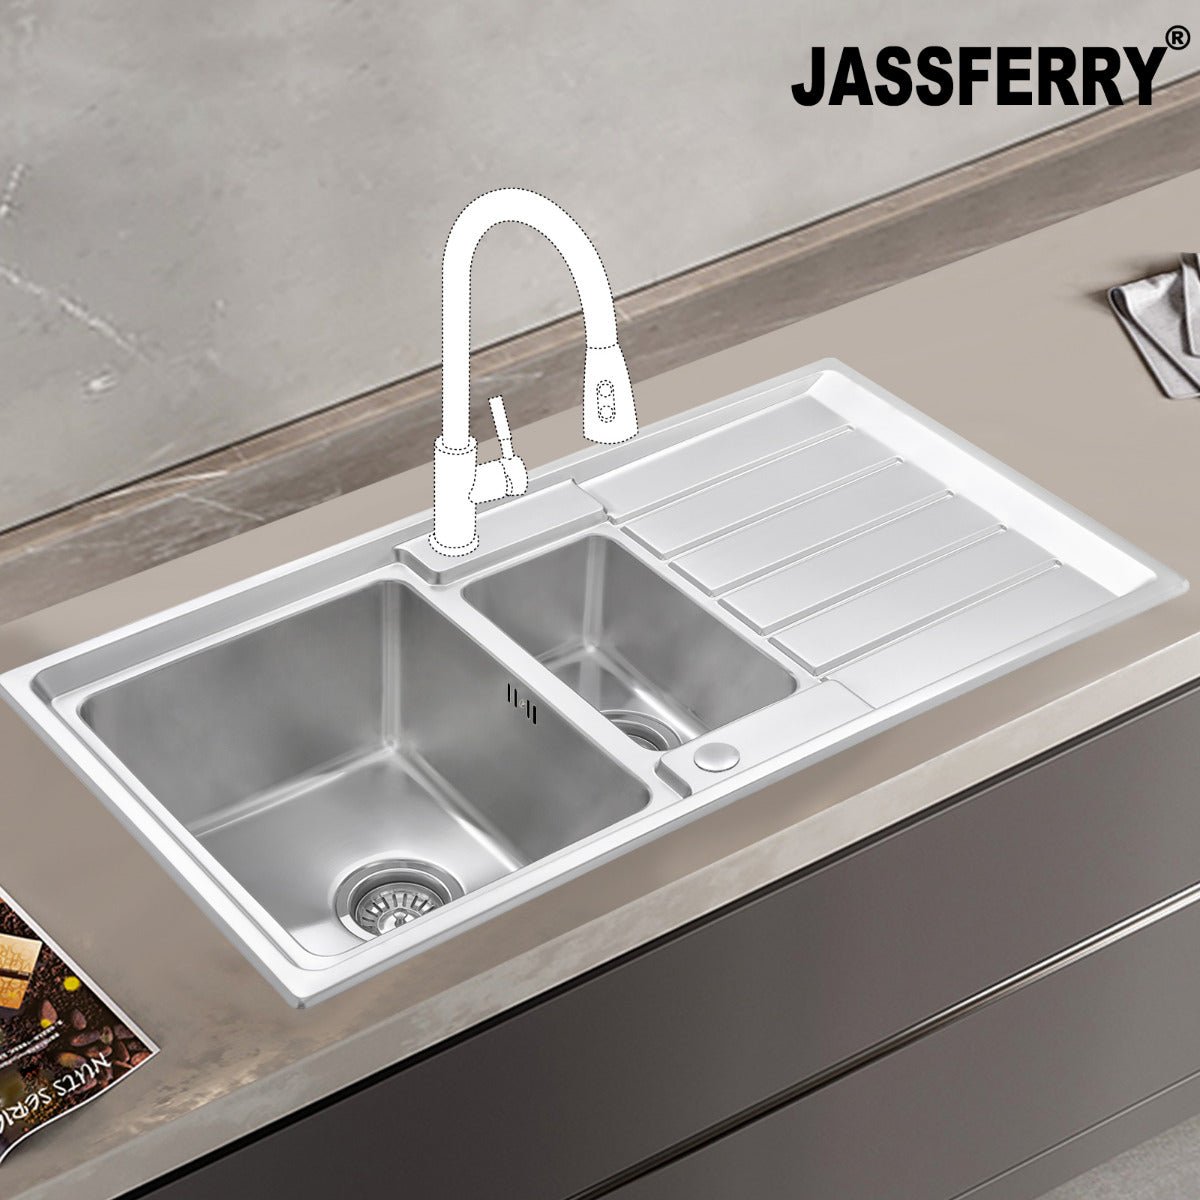 JassferryJASSFERRY Welding Stainless Steel Kitchen Sink 1.5 One Half Bowl Reversible DrainerKitchen Sinks